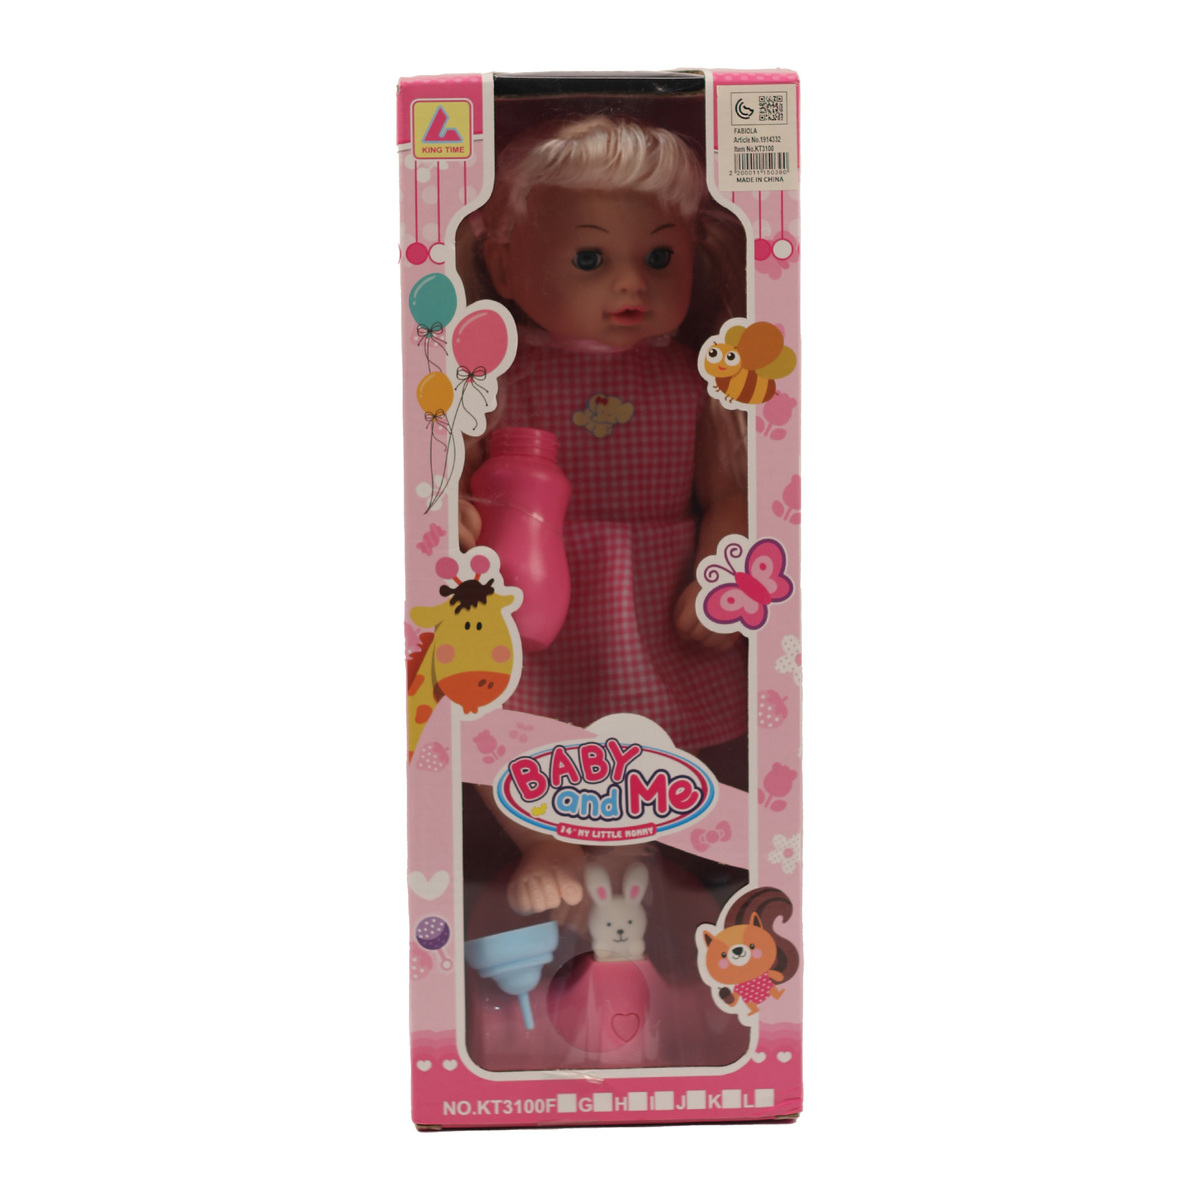 Fabiola Baby Doll 12" KT3100F